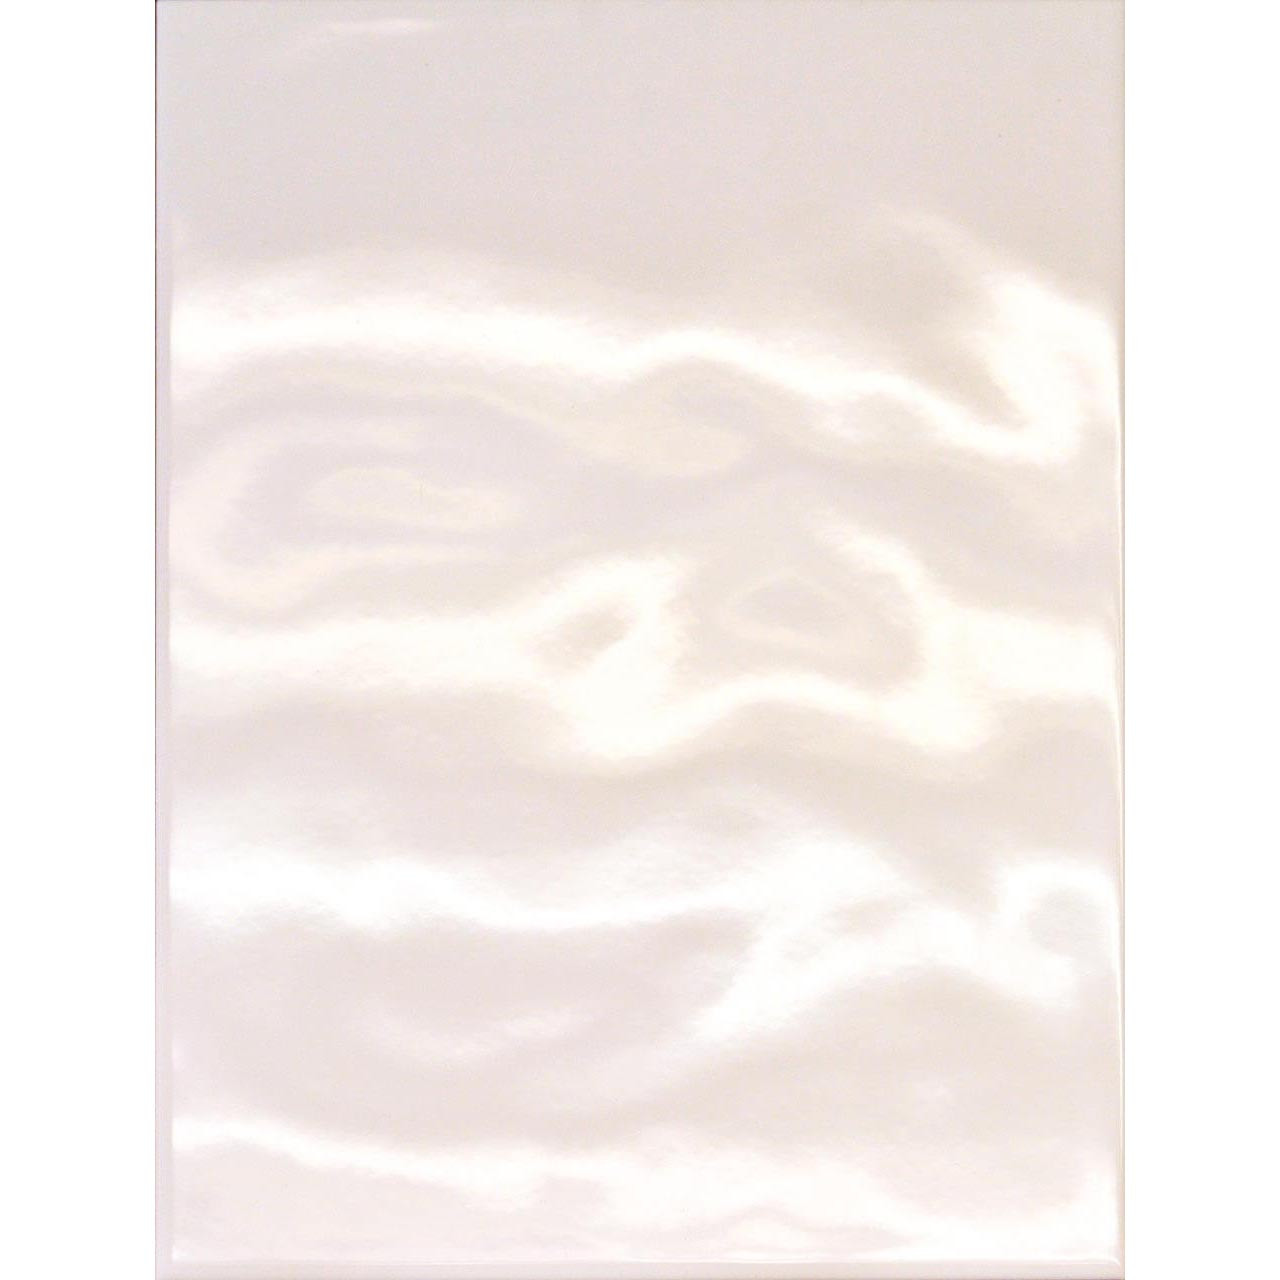 Photograph of 25x33cm Arctic Bumpy White tile 5445